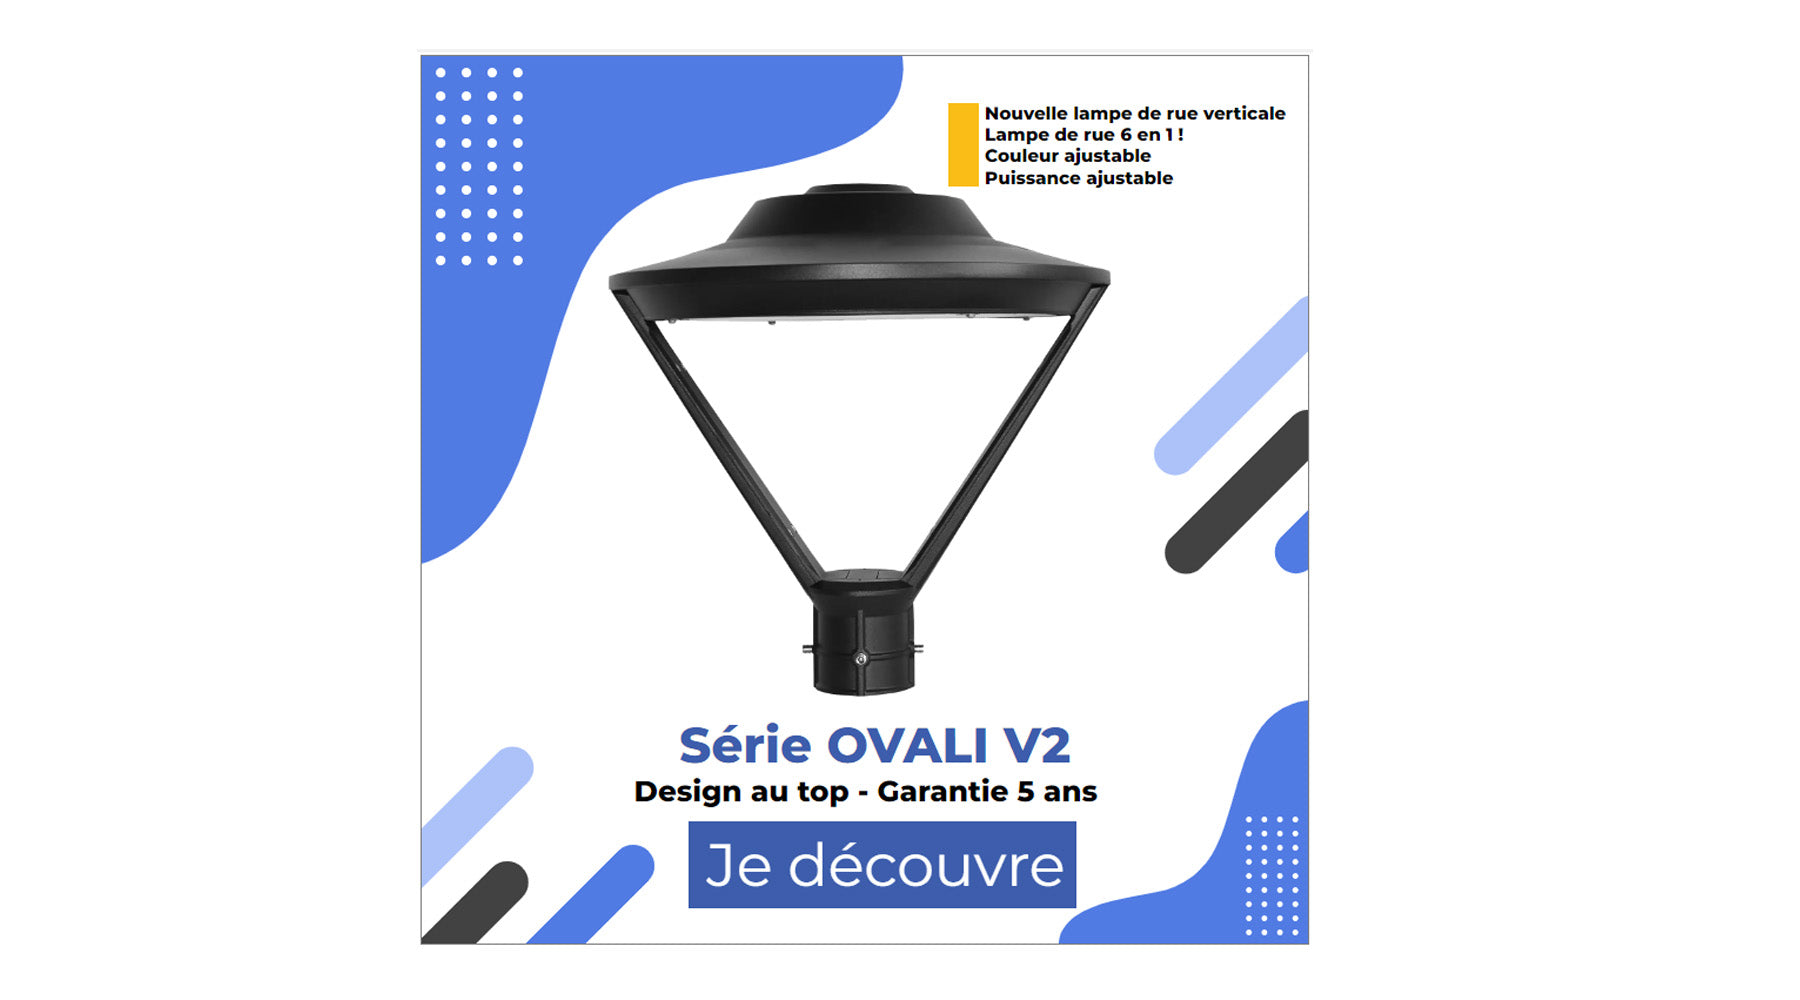 [NOUVEAU] Lampe de jardin et parking - Série OVALI V2 CCT (Couleur Changeante en Température) & Puissance Ajustable